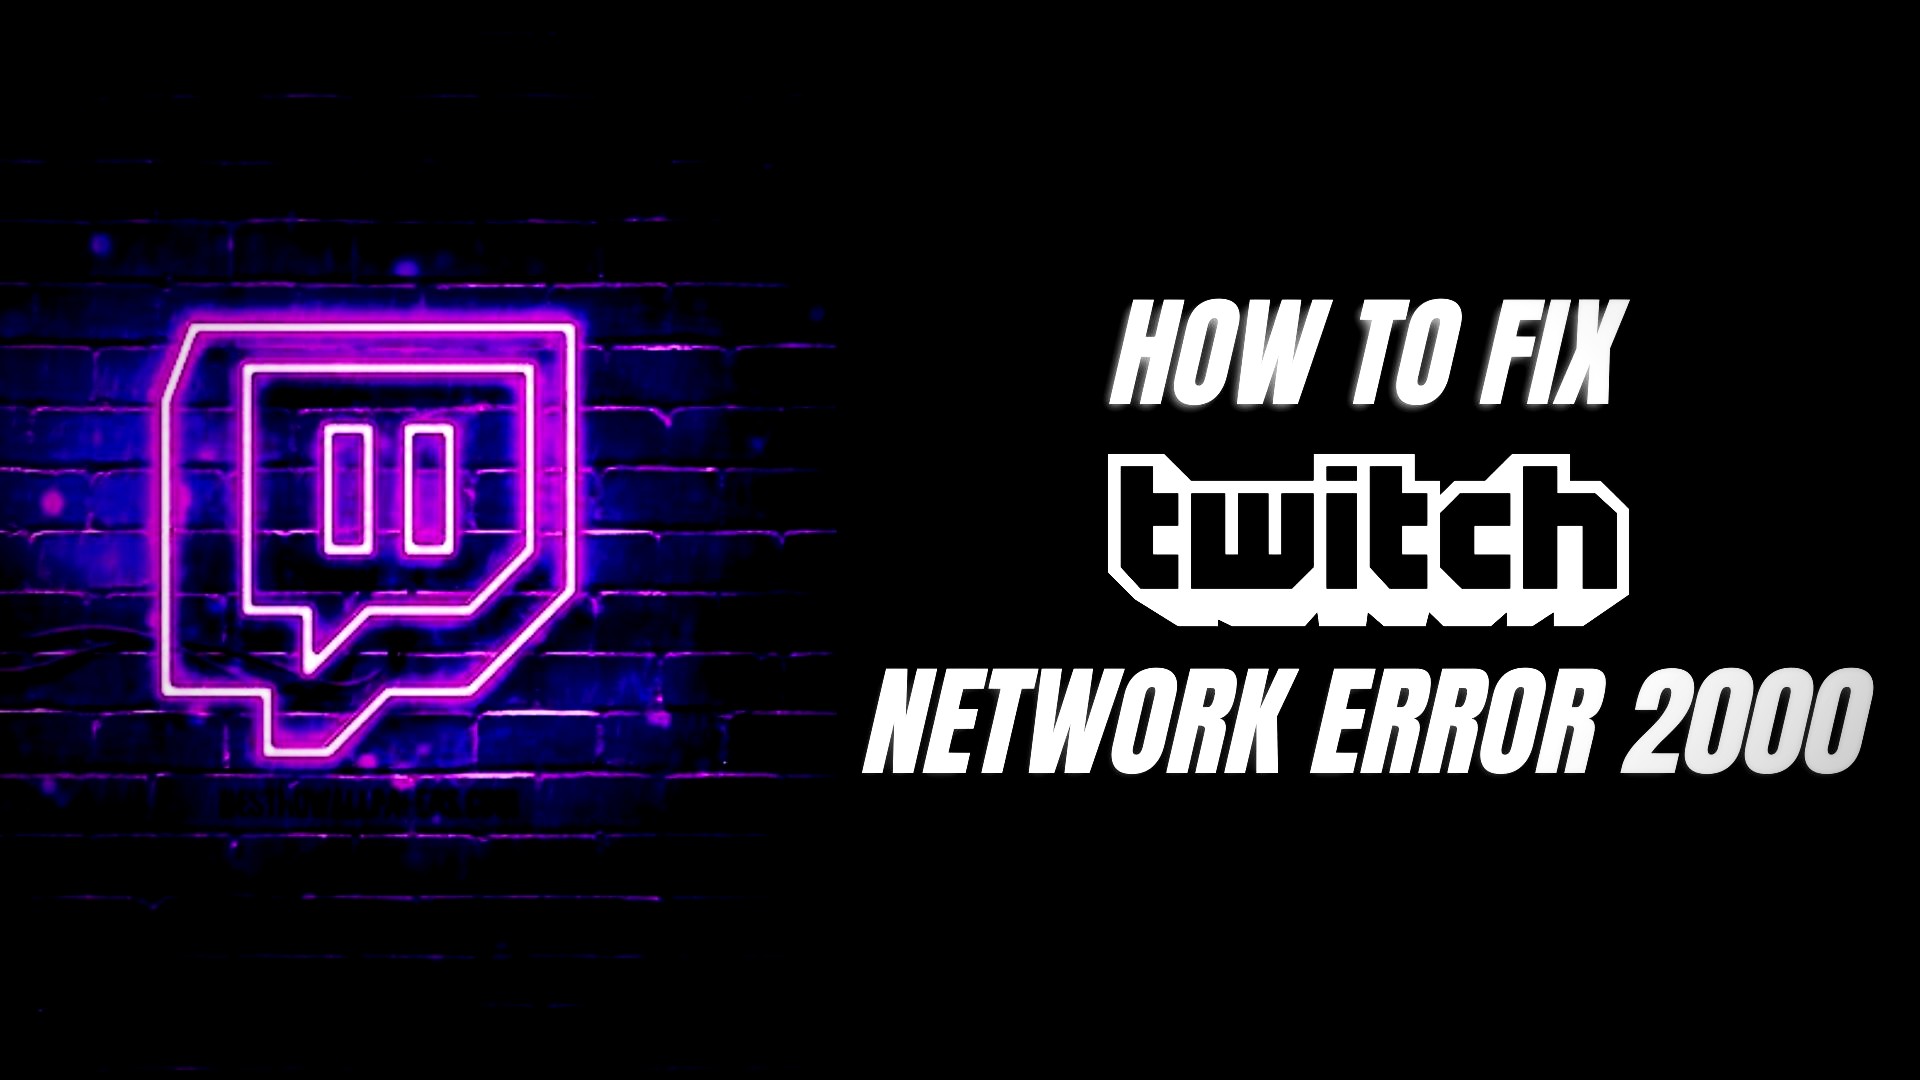 Twitch network error 2000